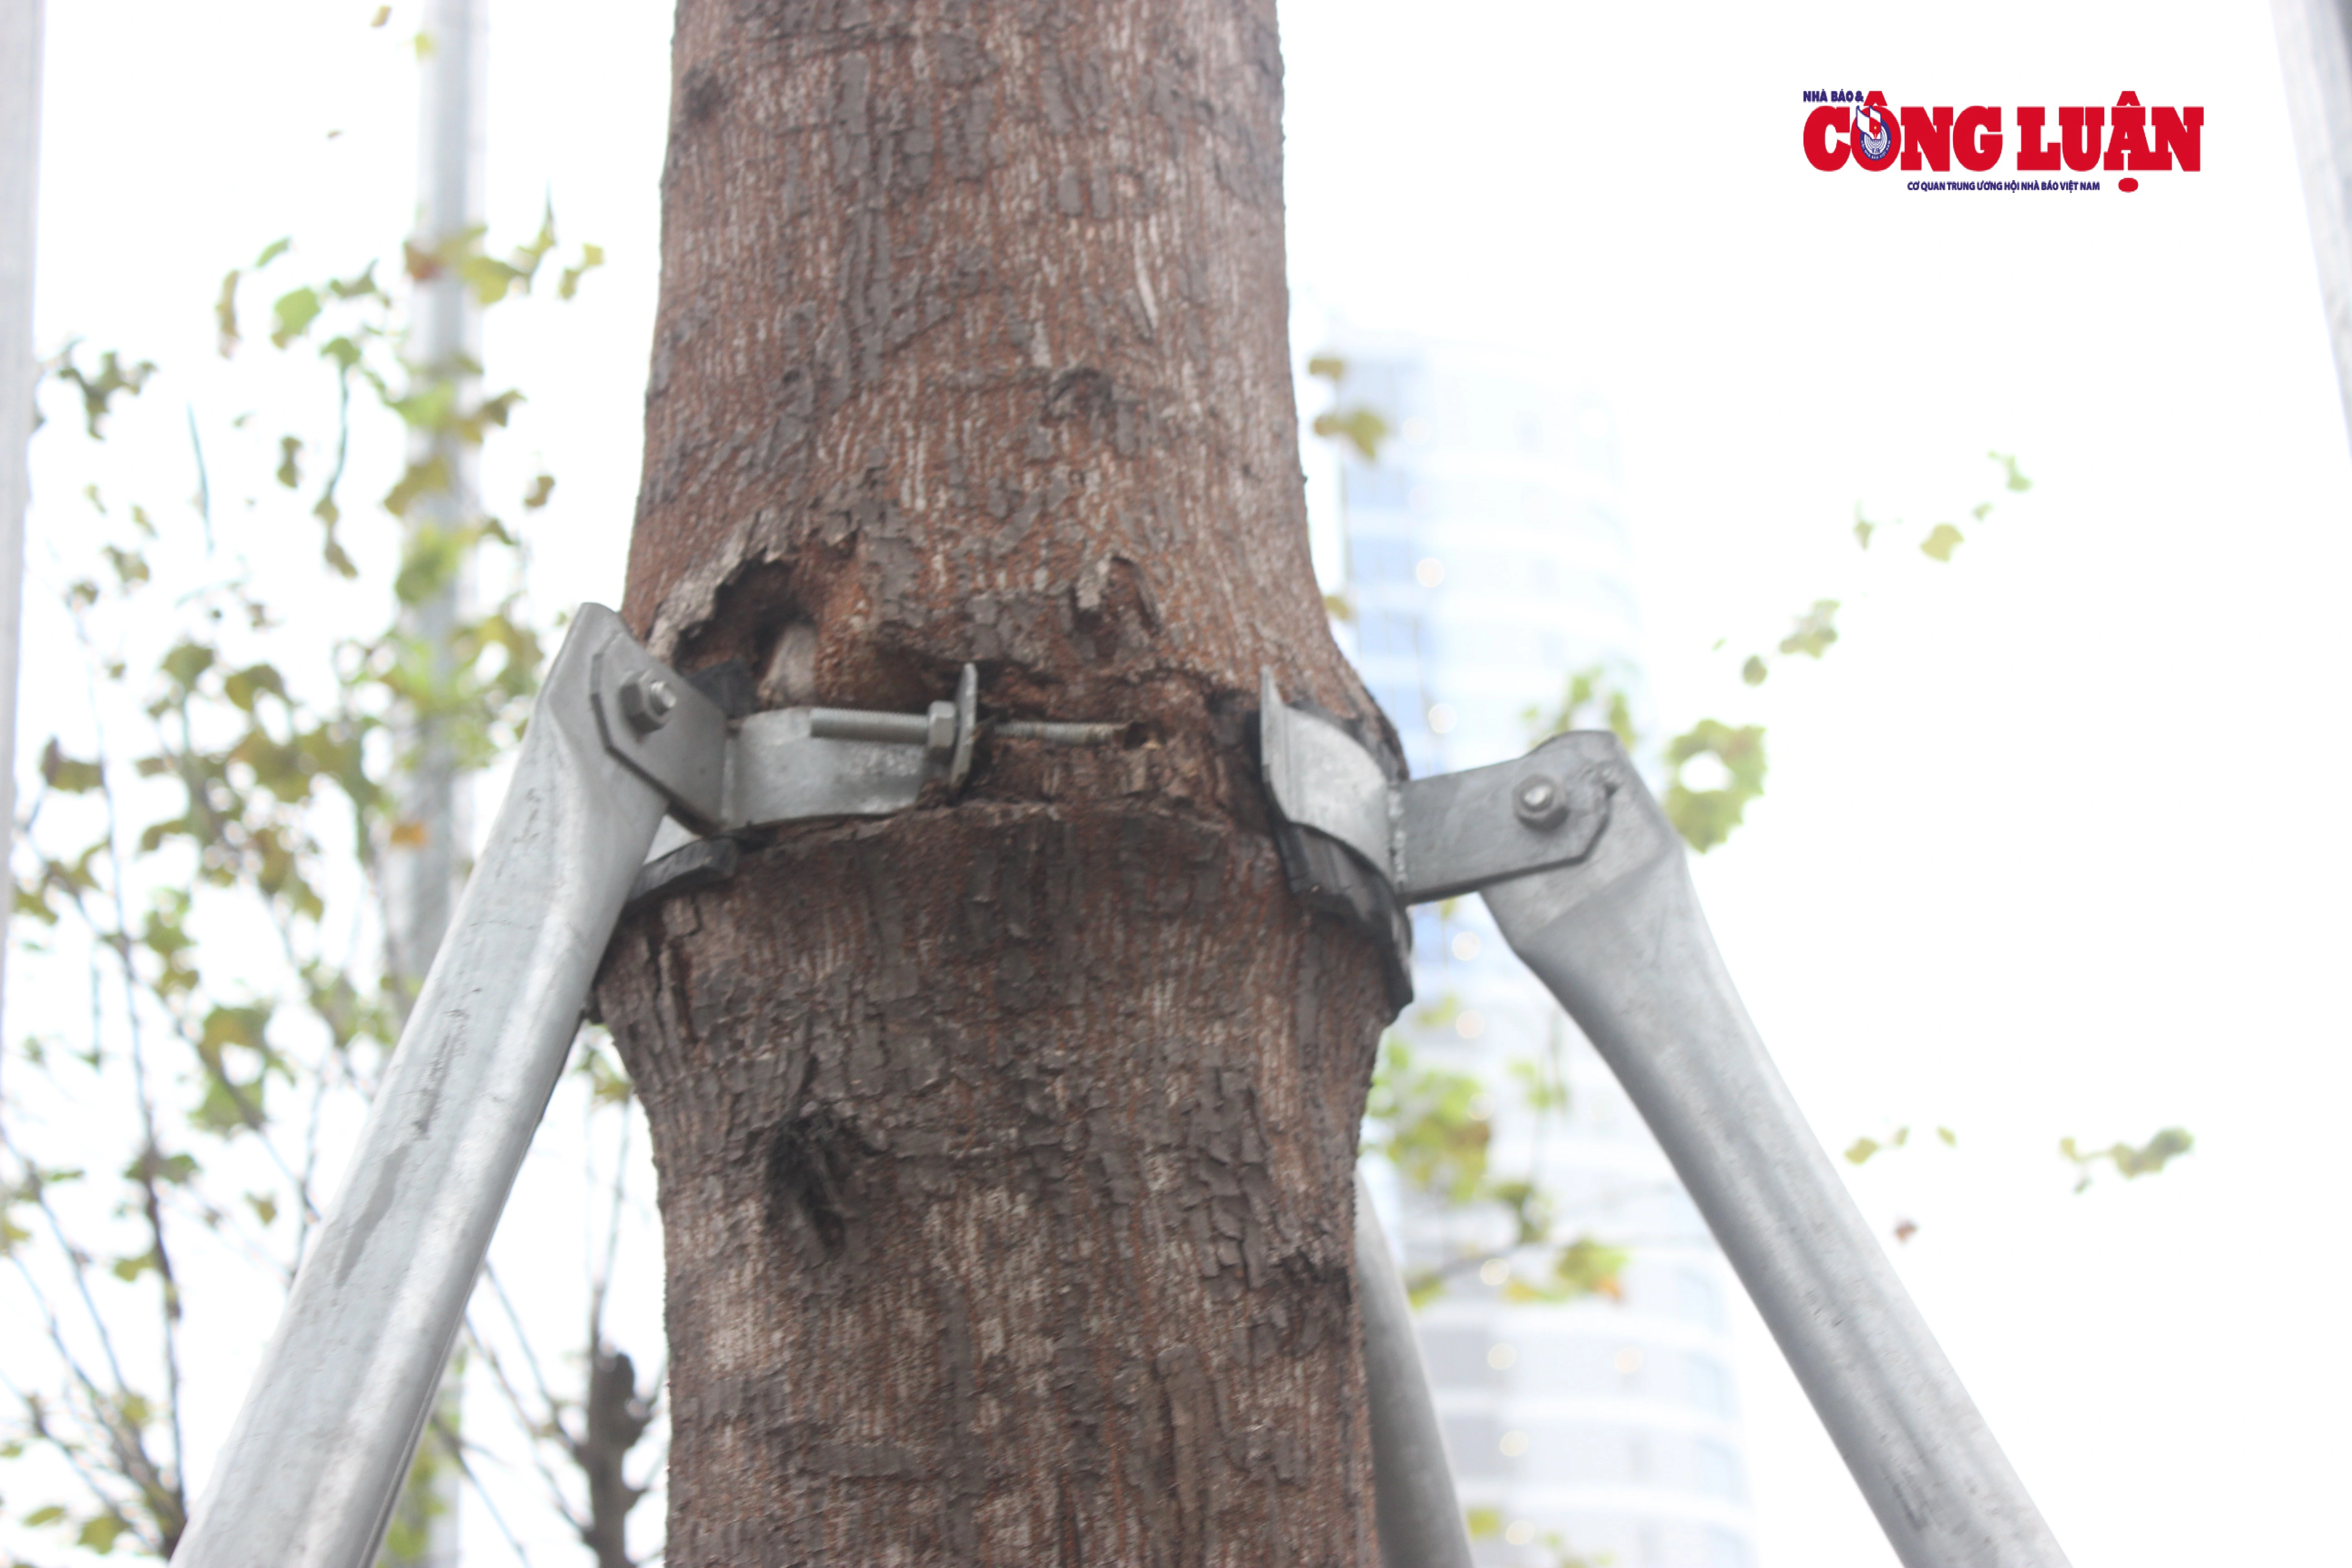 Vòng đai sắt không được tháo ra, cứa sâu vào thân cây tạo thành những vết thương lớn